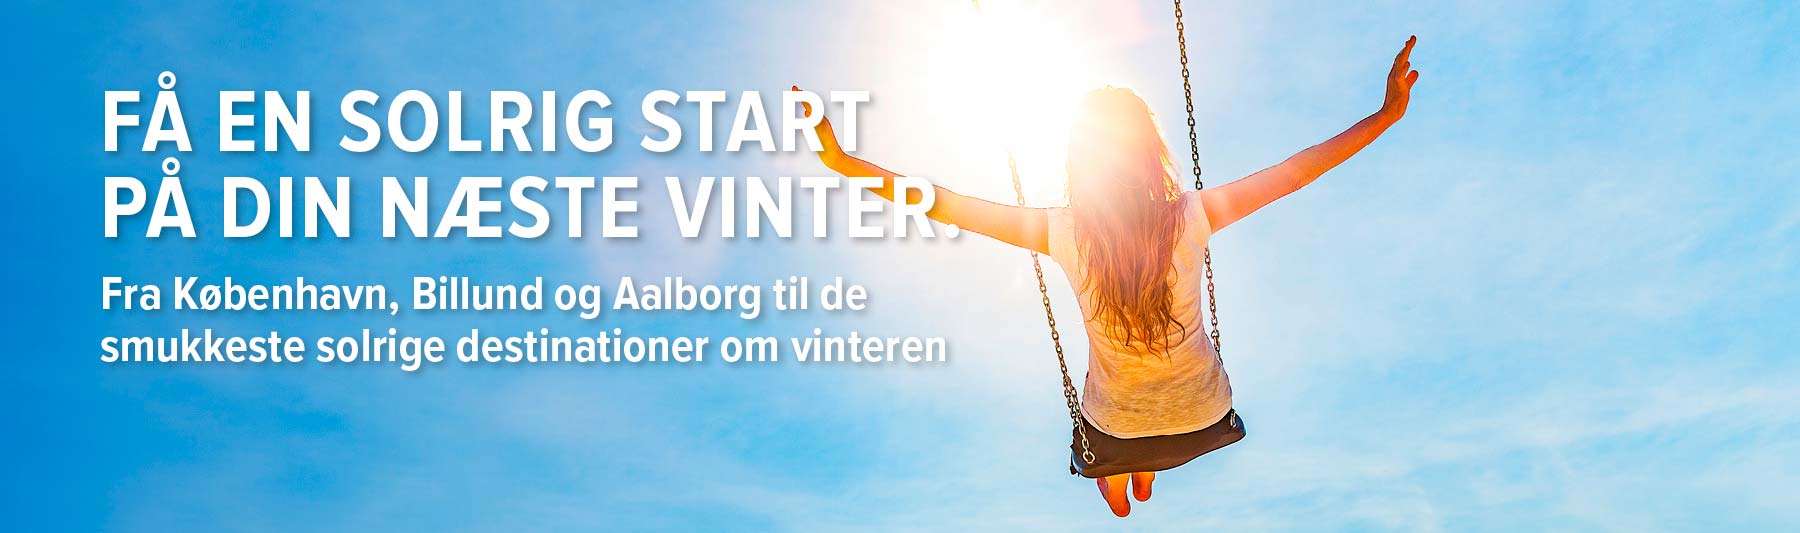 Få en solrig start på din næste vinter